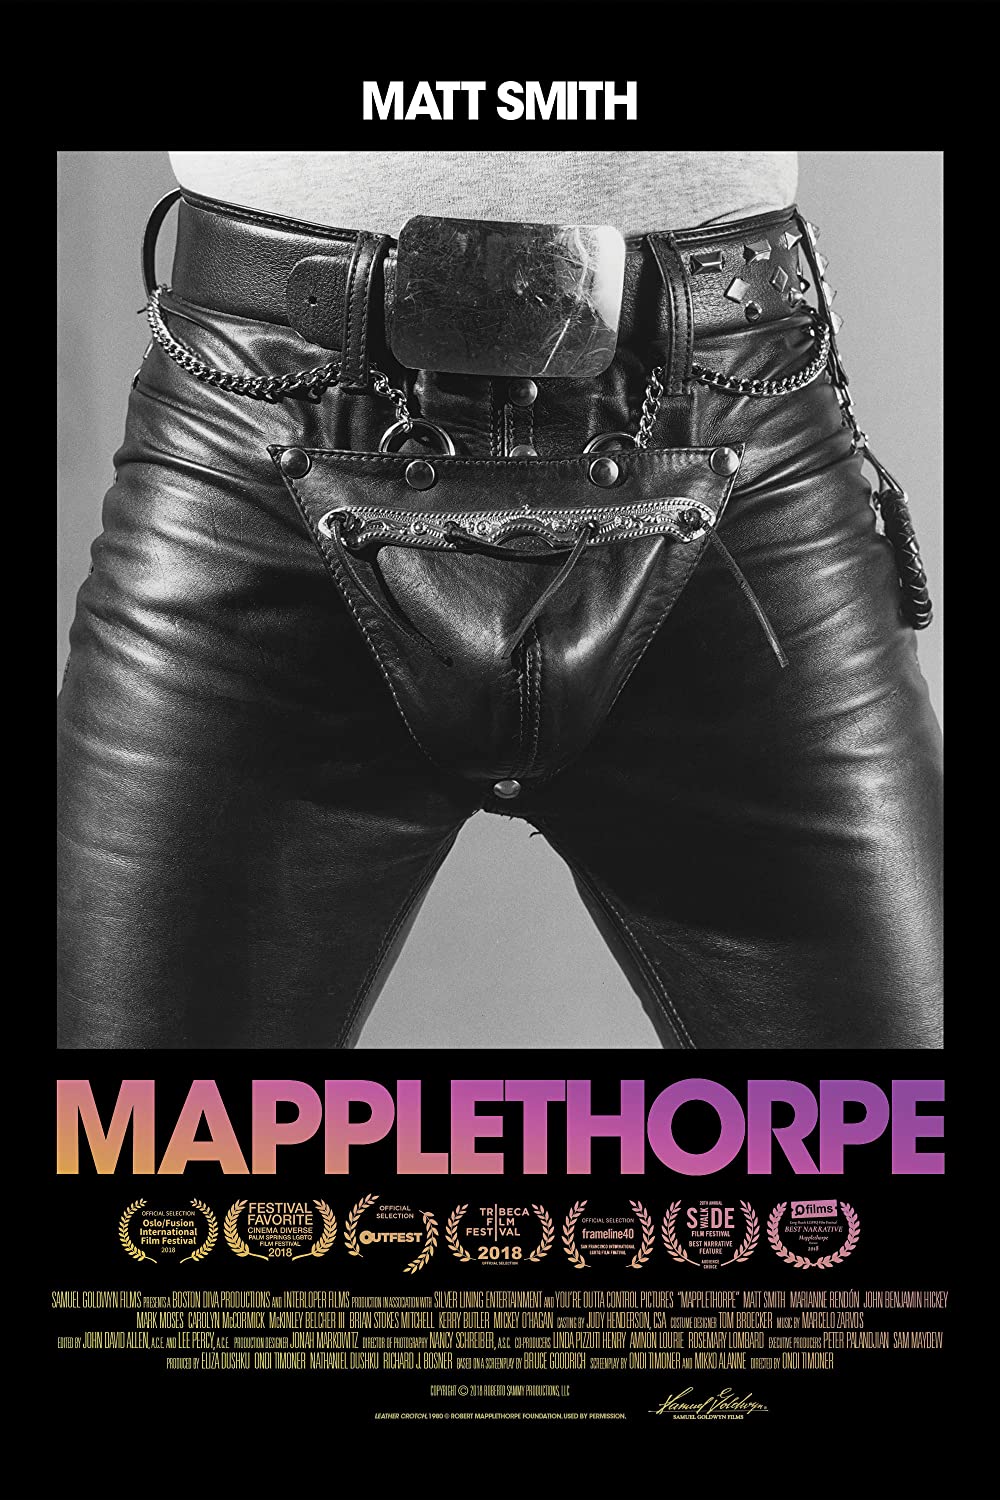 Filmbeschreibung zu Mapplethorpe